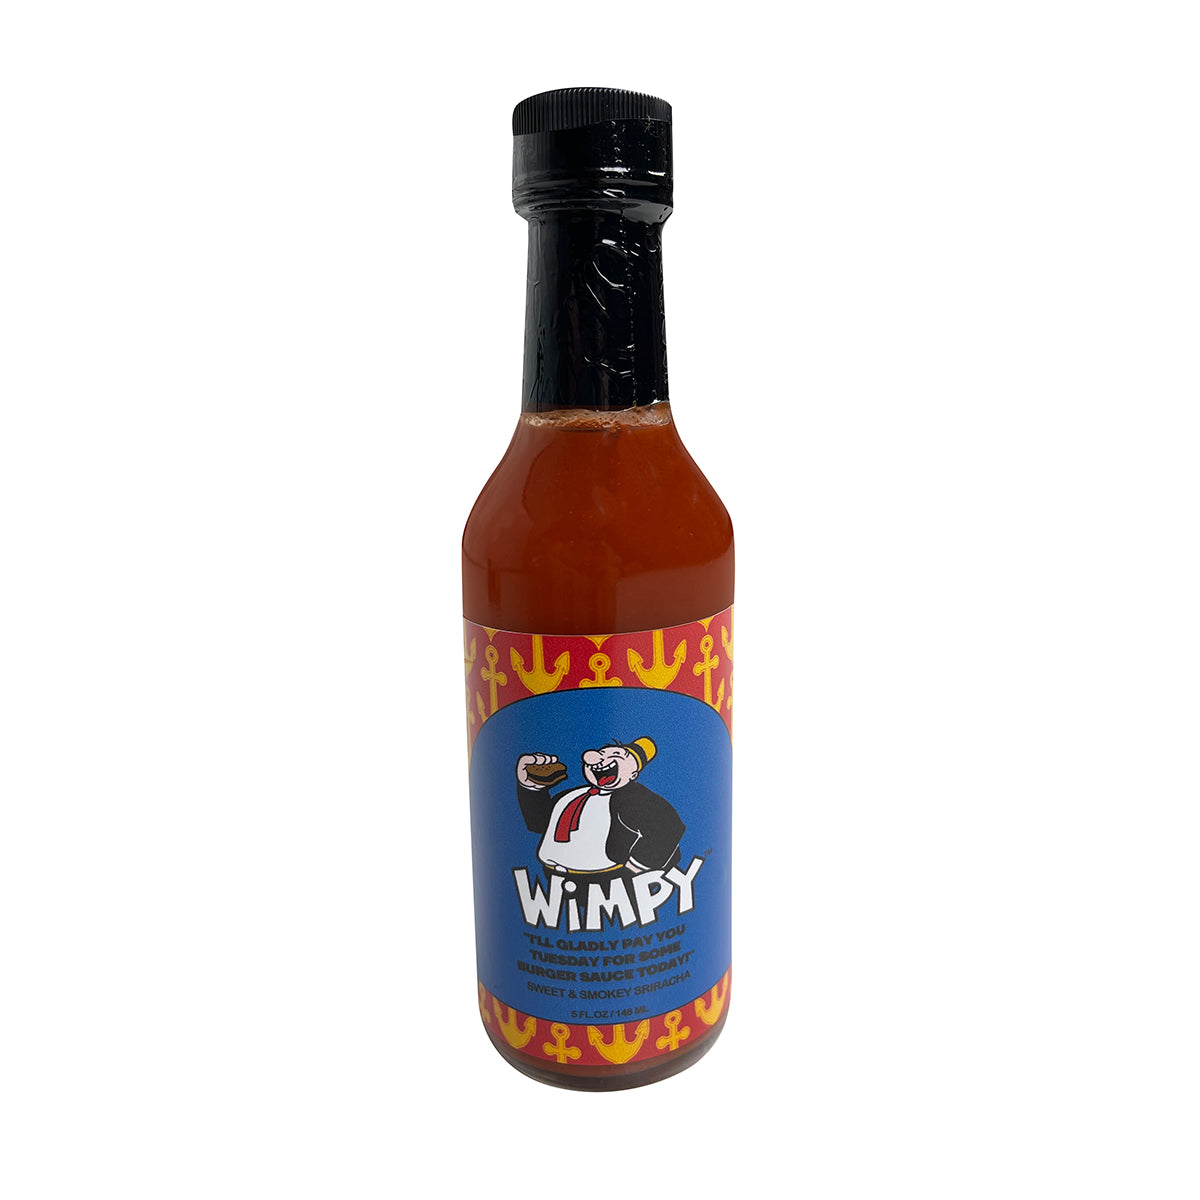 Wimpy Sauce